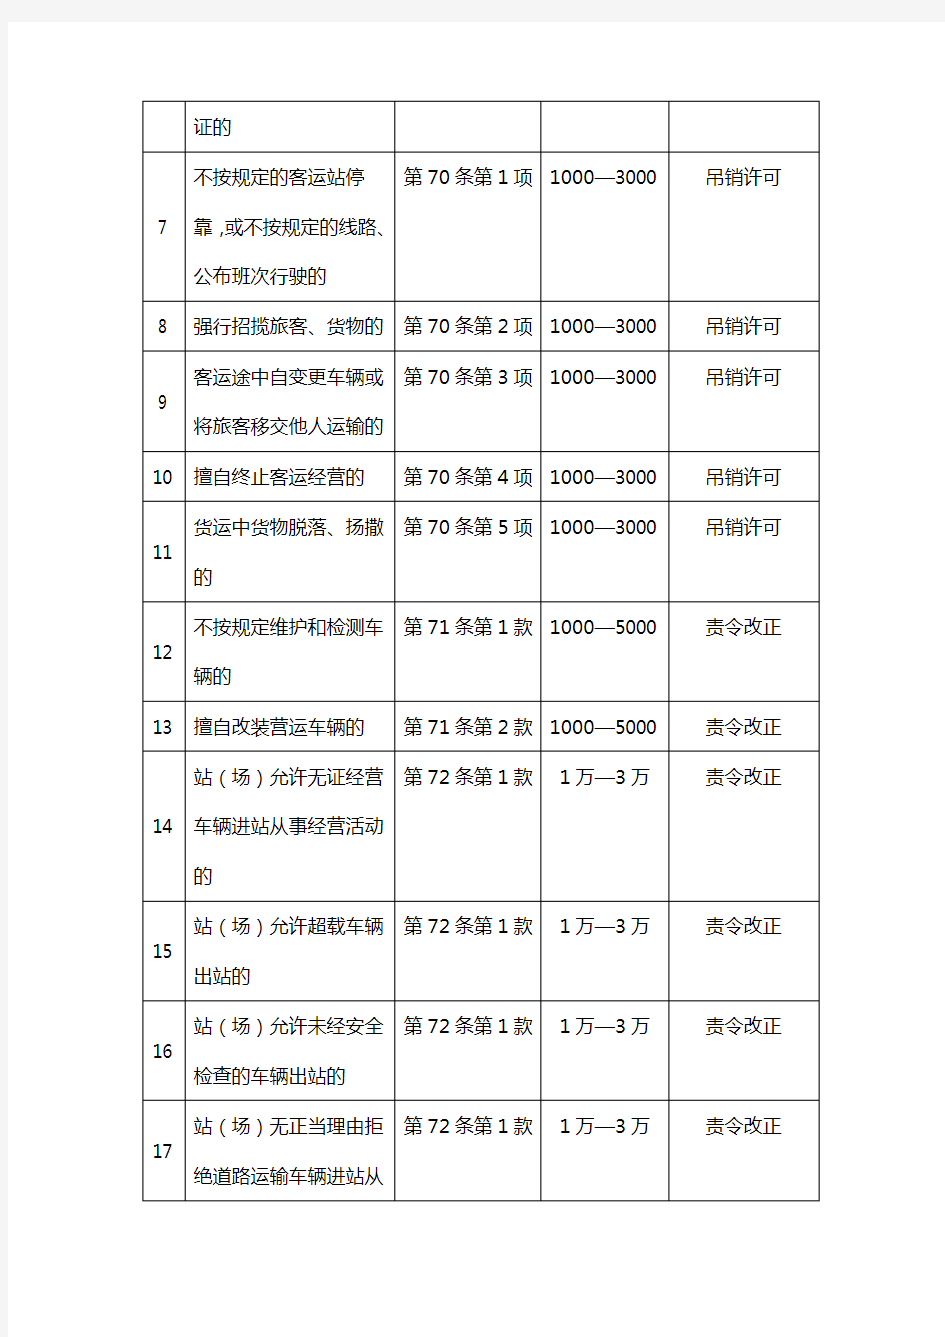 中华人民共和国道路运输条例违章行为与处罚依据对照表